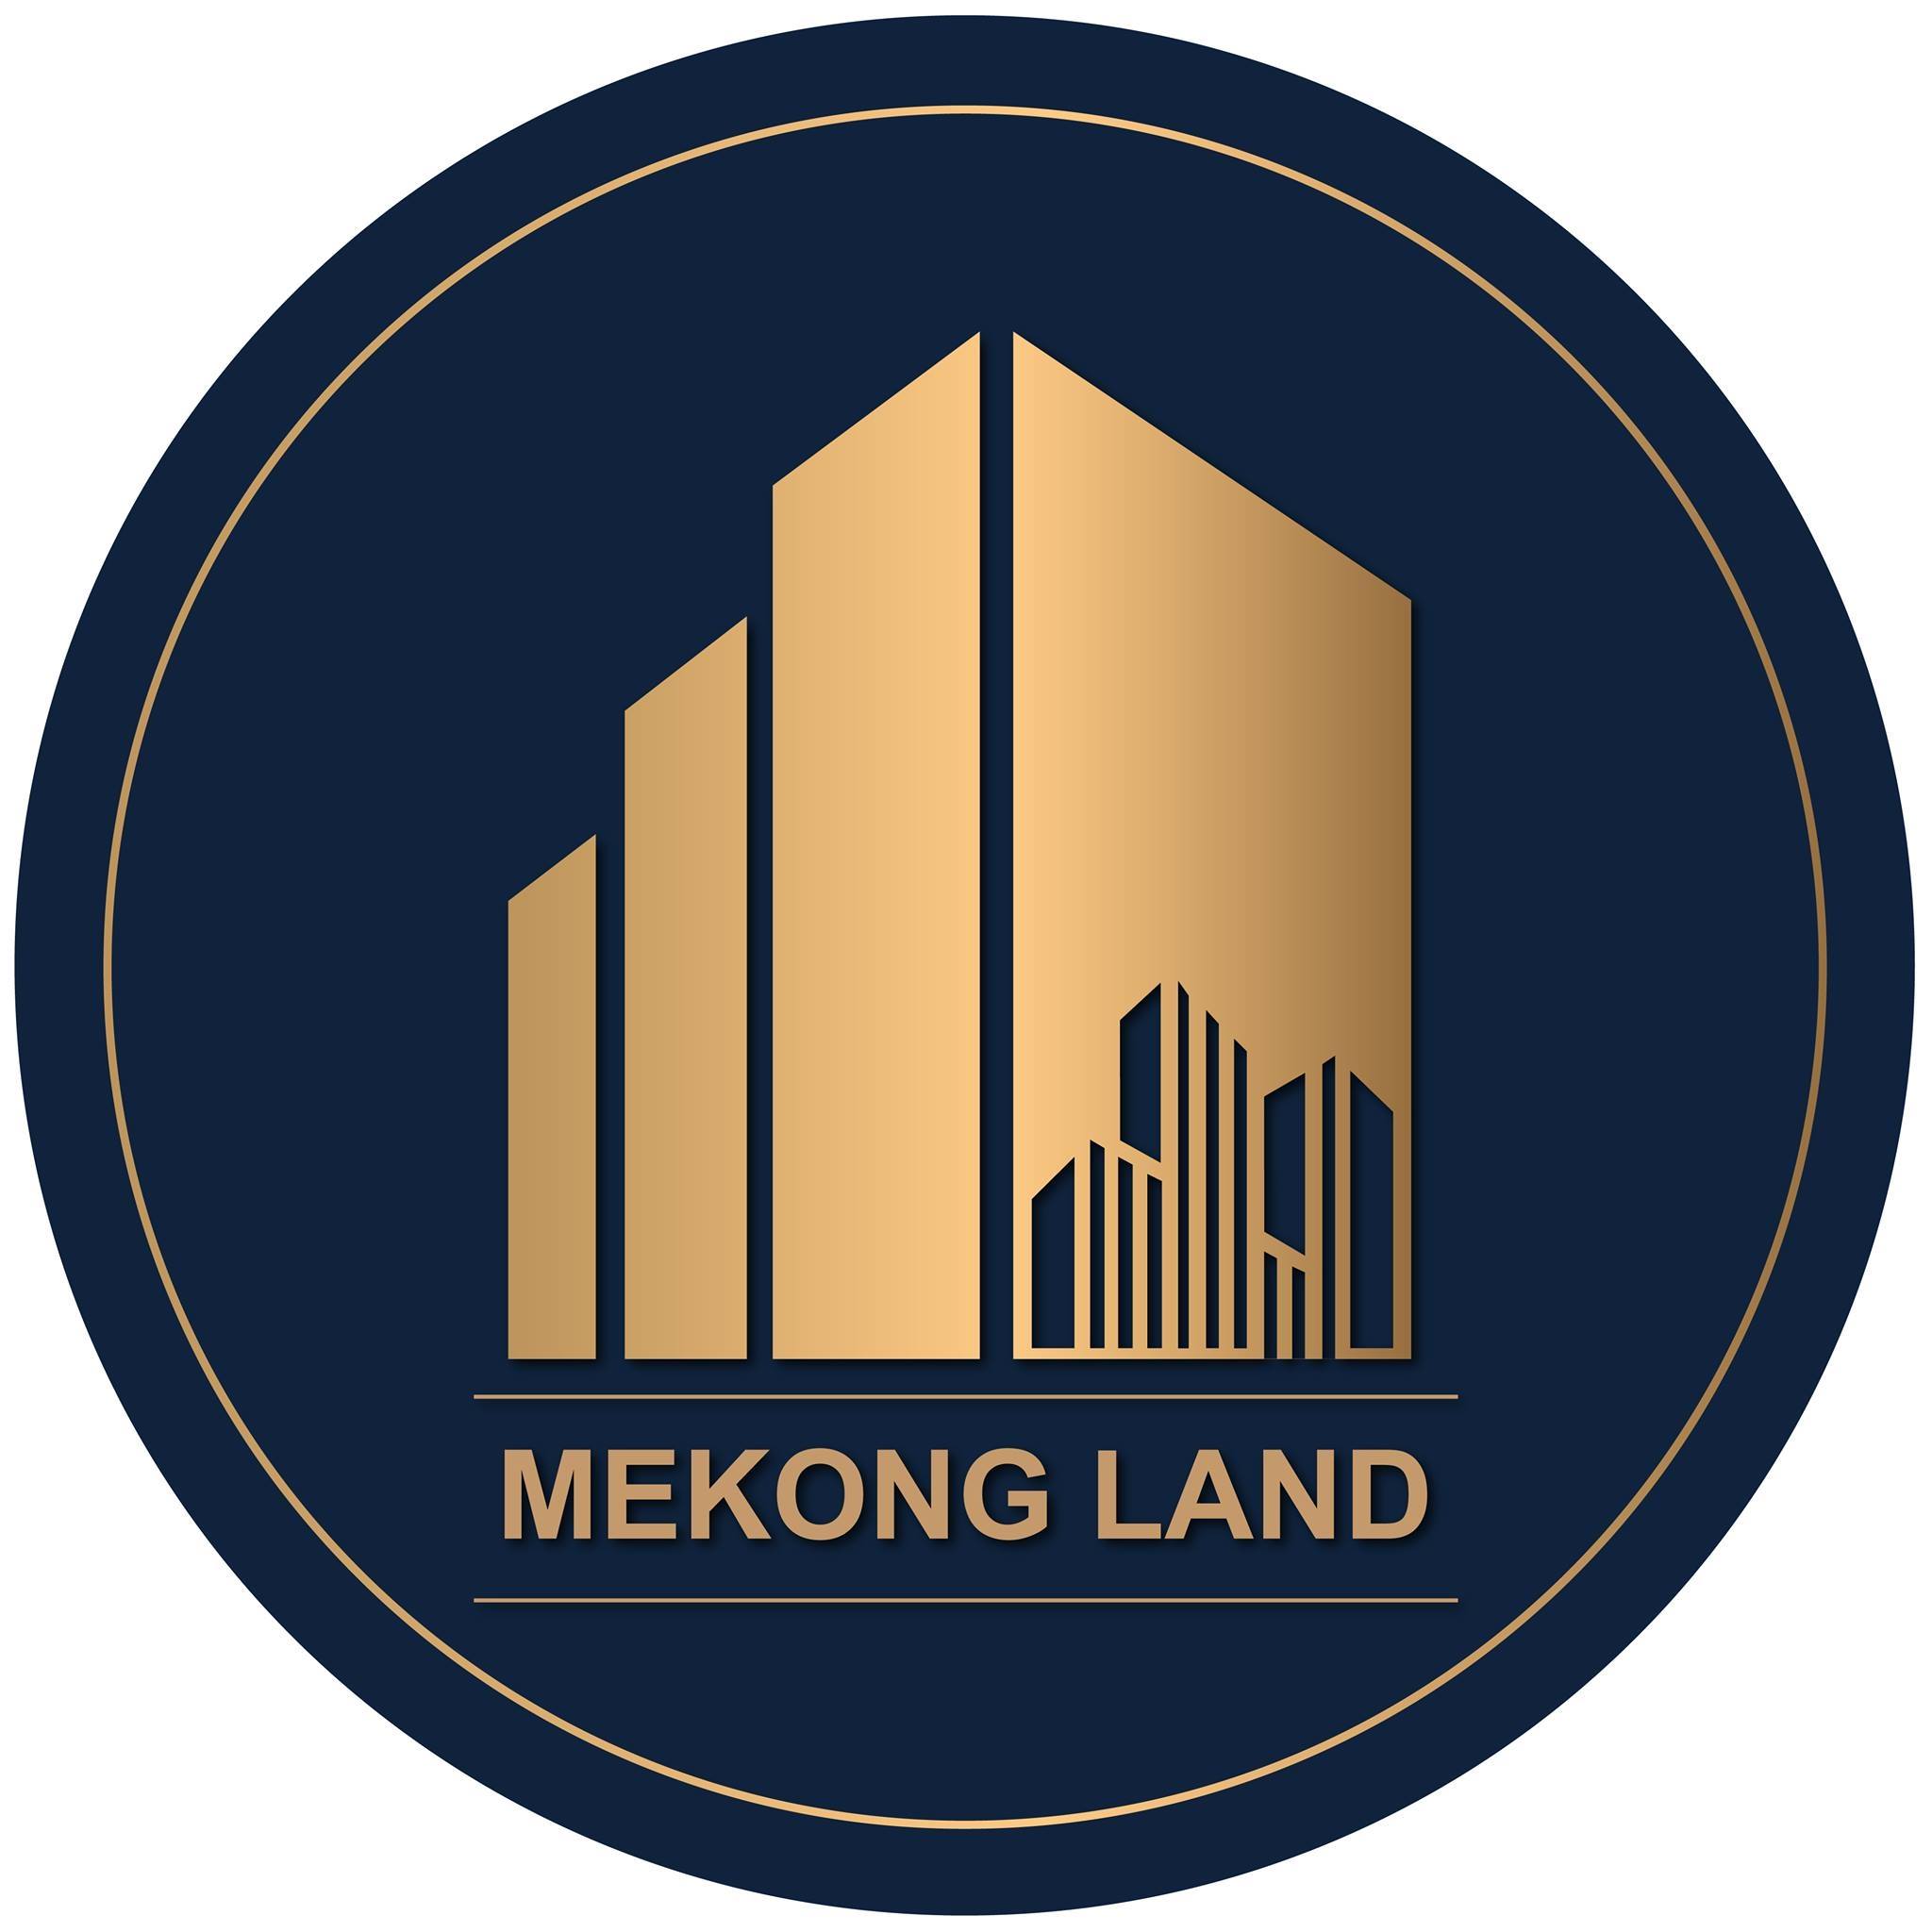 MEKONG LAND DEVELOPMENT CO., LTD